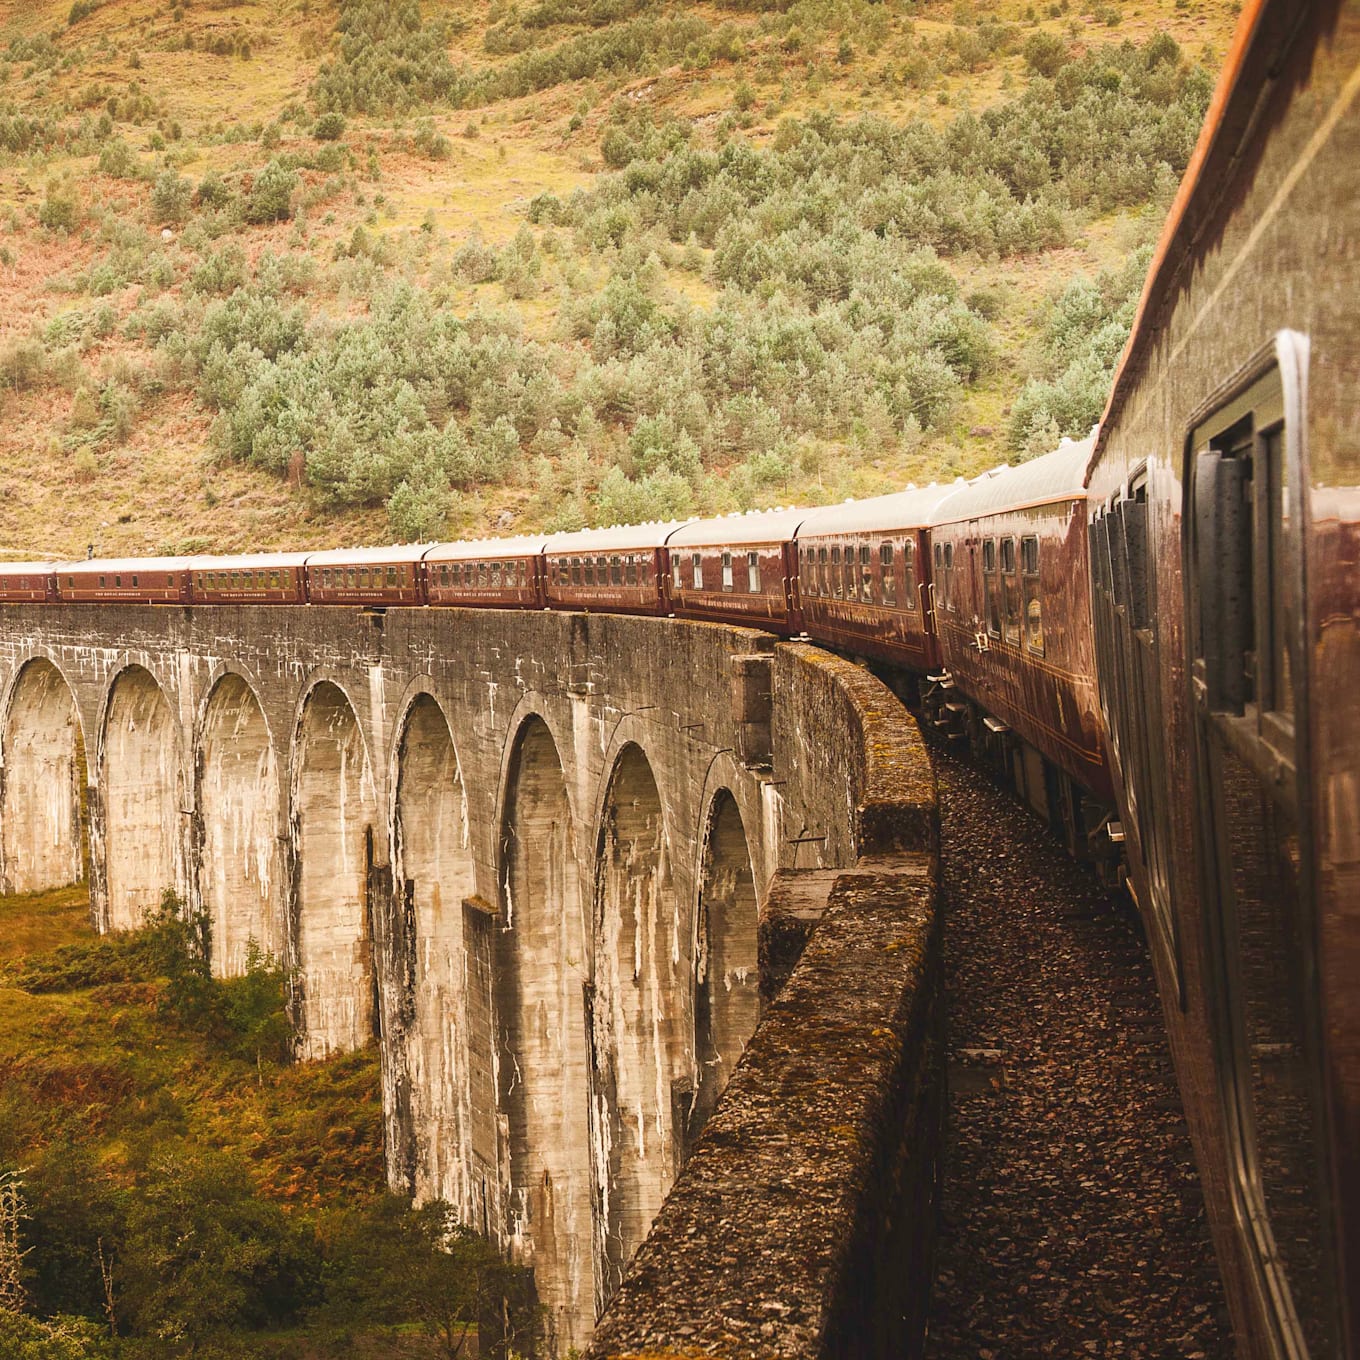 Royal Scotsman, A Belmond Train